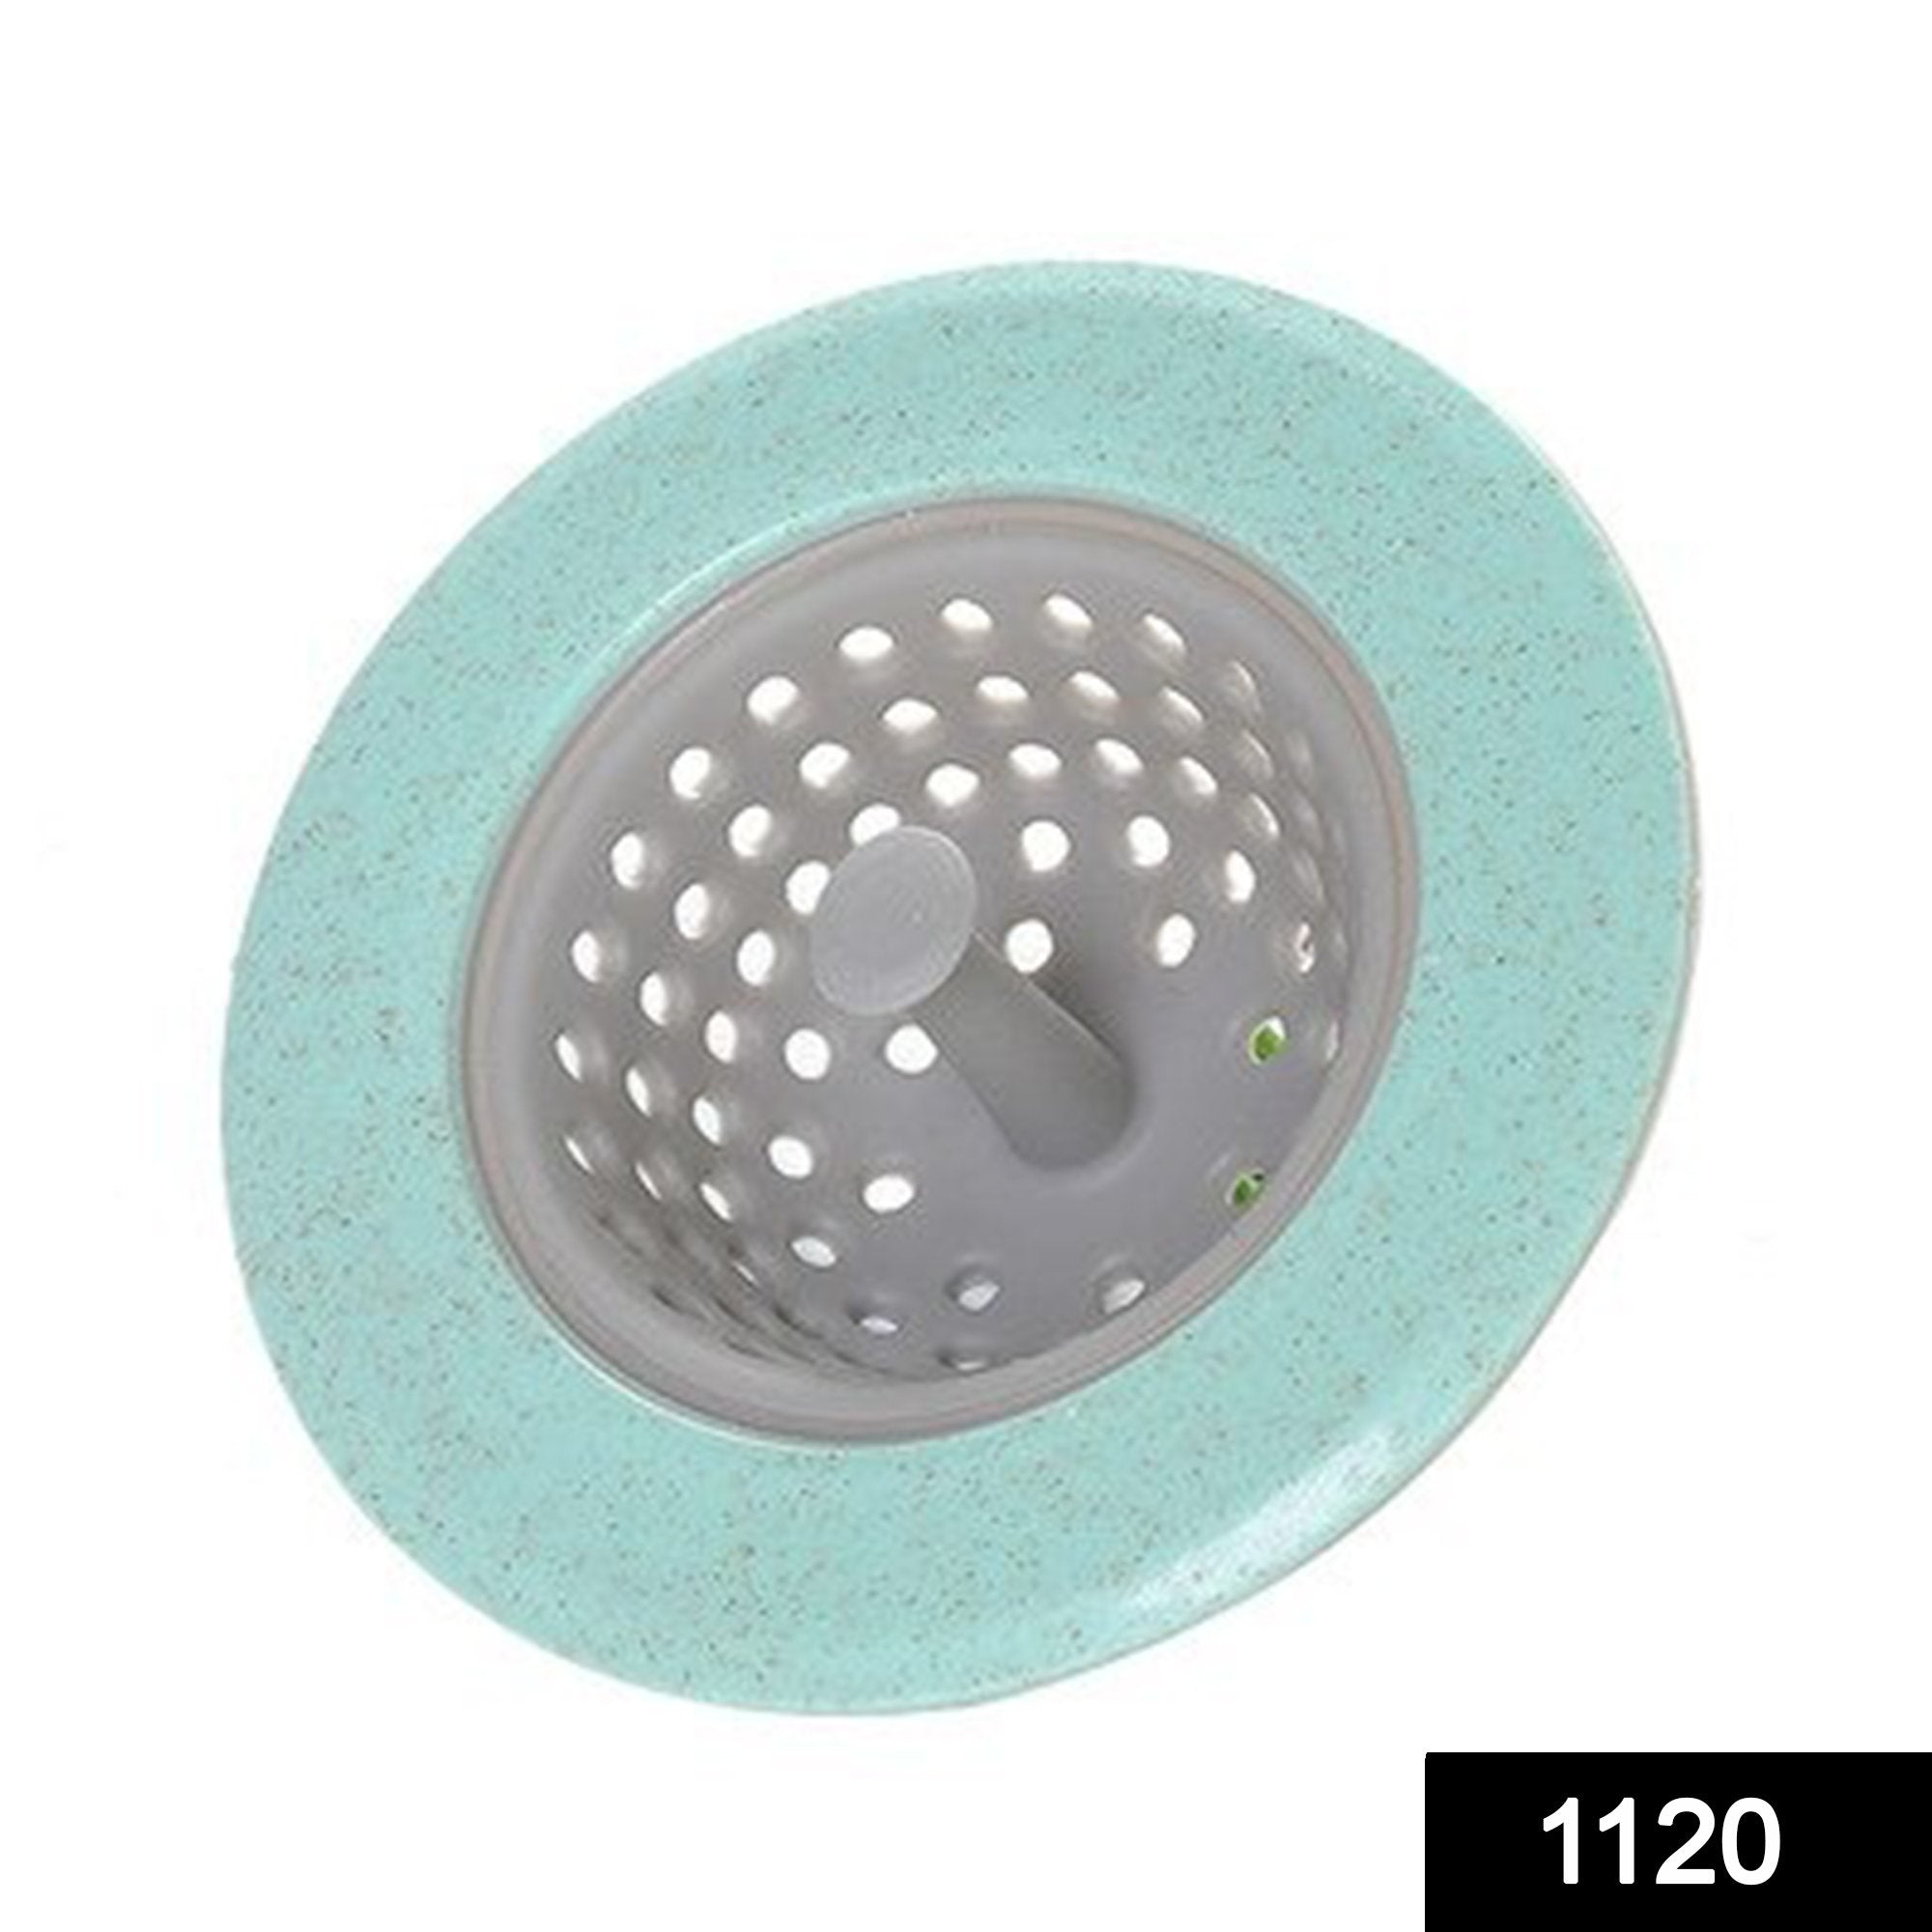 1120 silicon sink strainer kitchen drain basin basket sink drainer